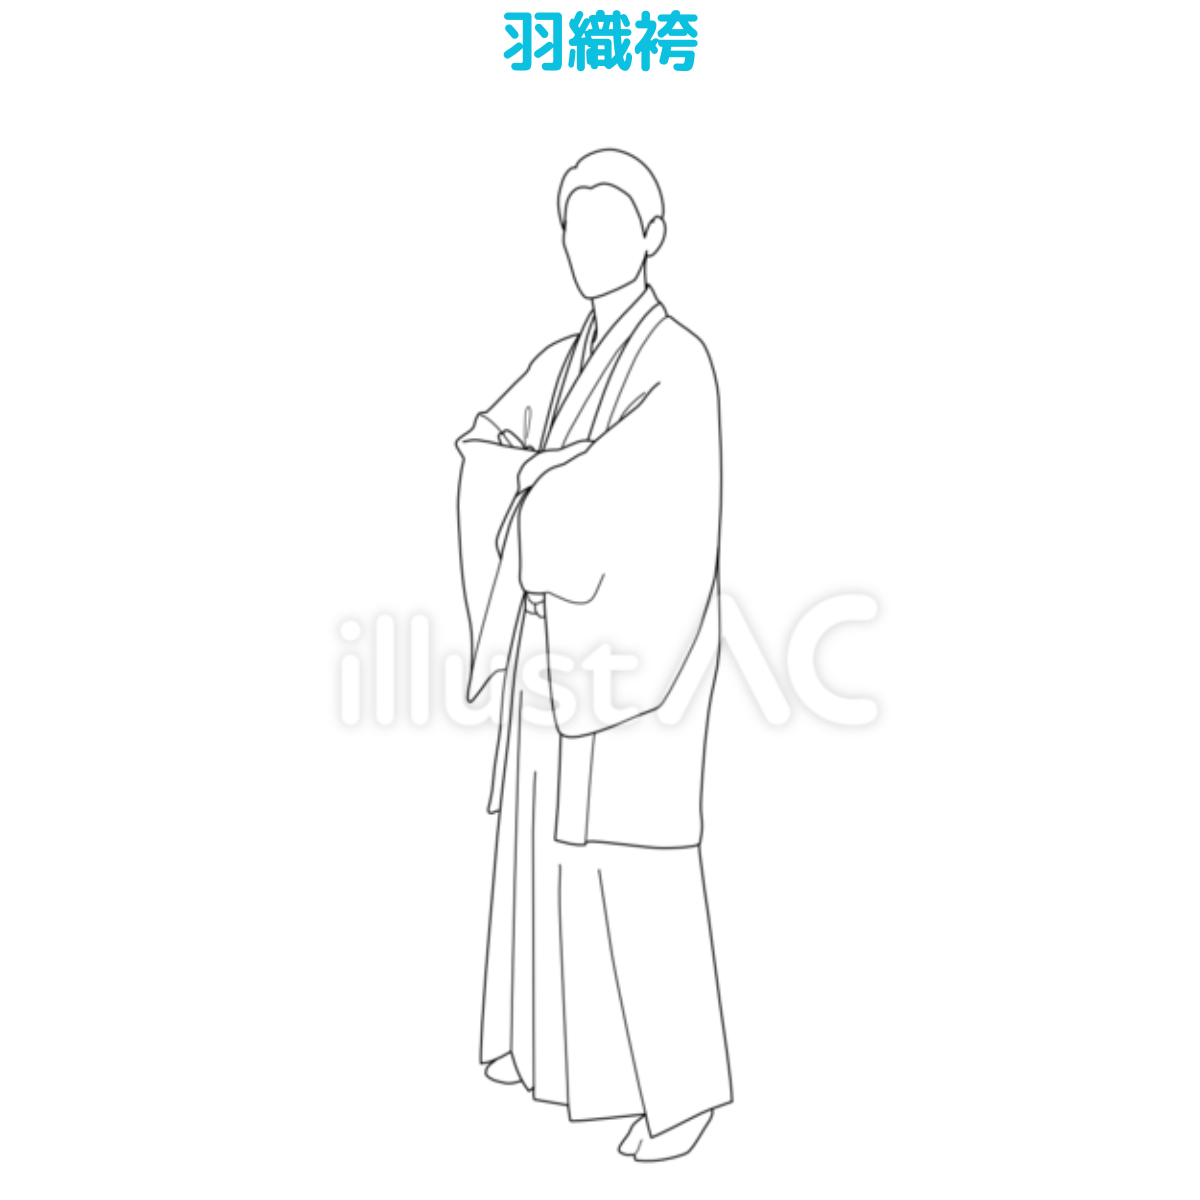 【イラスト20選】着物・男・横向きの画像20件目。羽織袴の画像